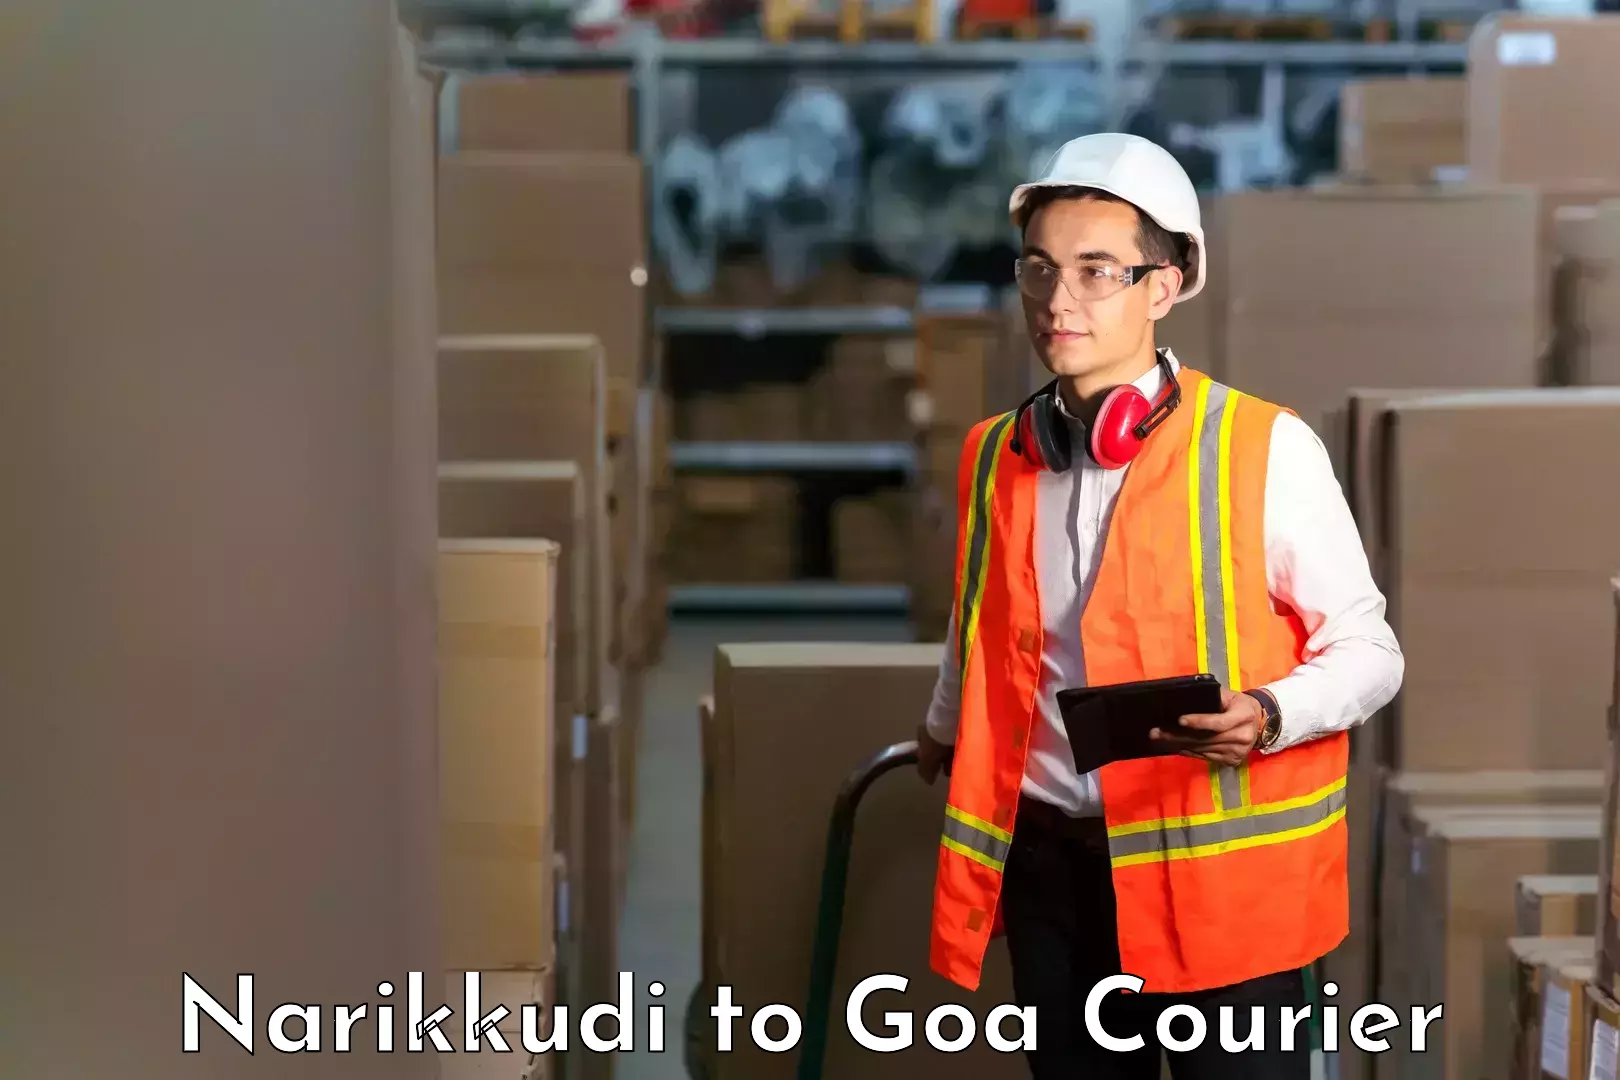 Efficient shipping platforms Narikkudi to NIT Goa